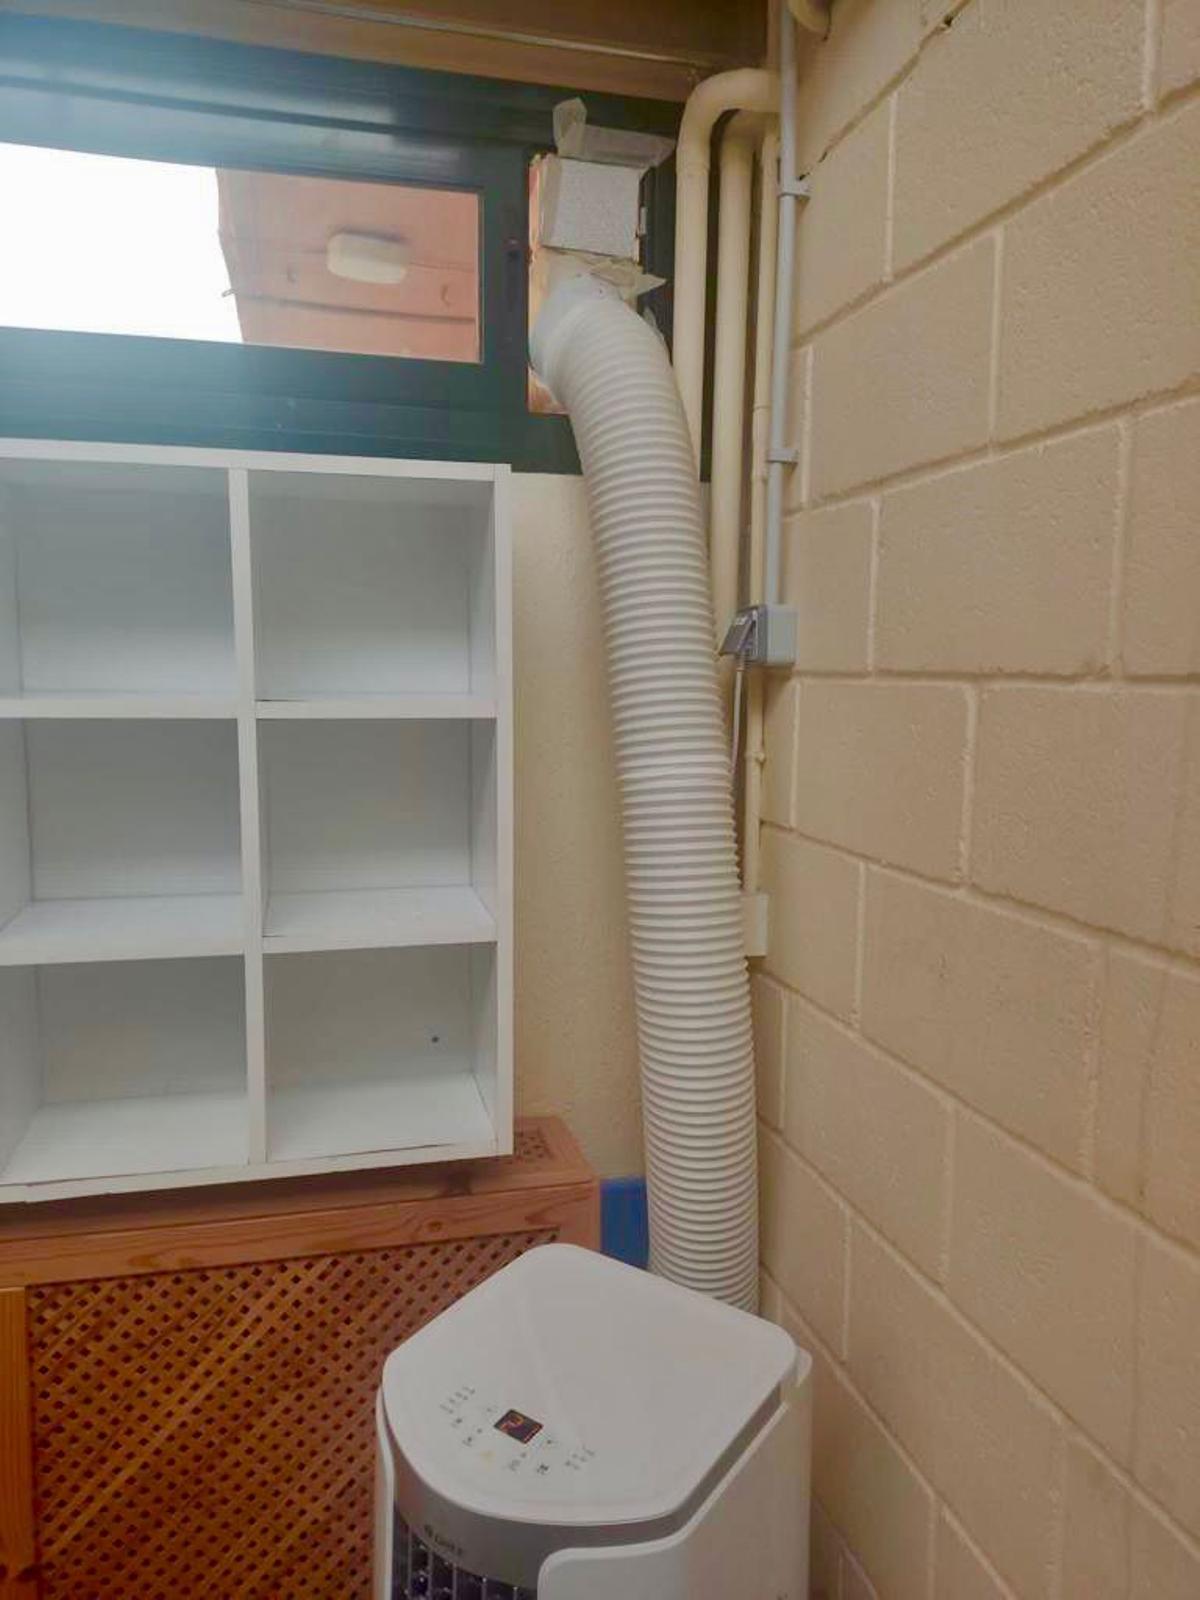 Un aparato de aire de una escuela municipal con el tubo saliendo por la ventana